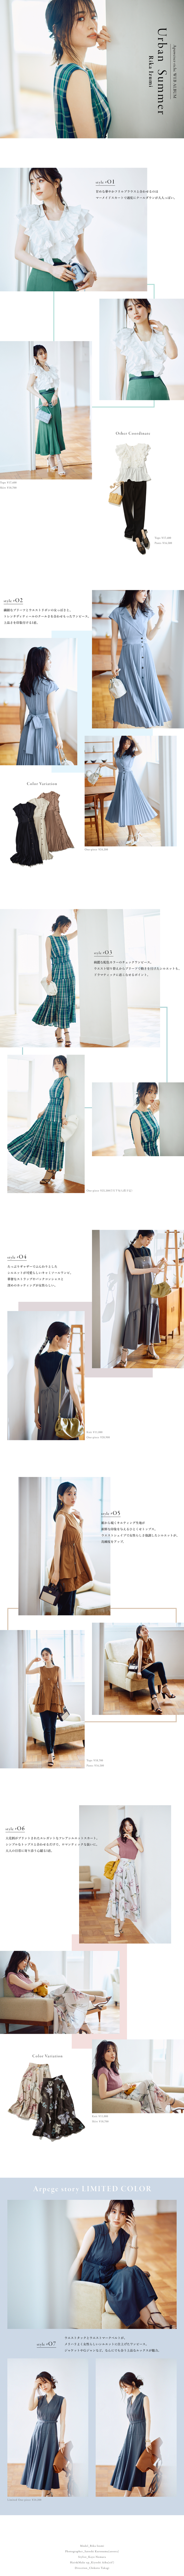 WEB ALBUM vol.61 - Apuweiser-riche × Rika Izumi